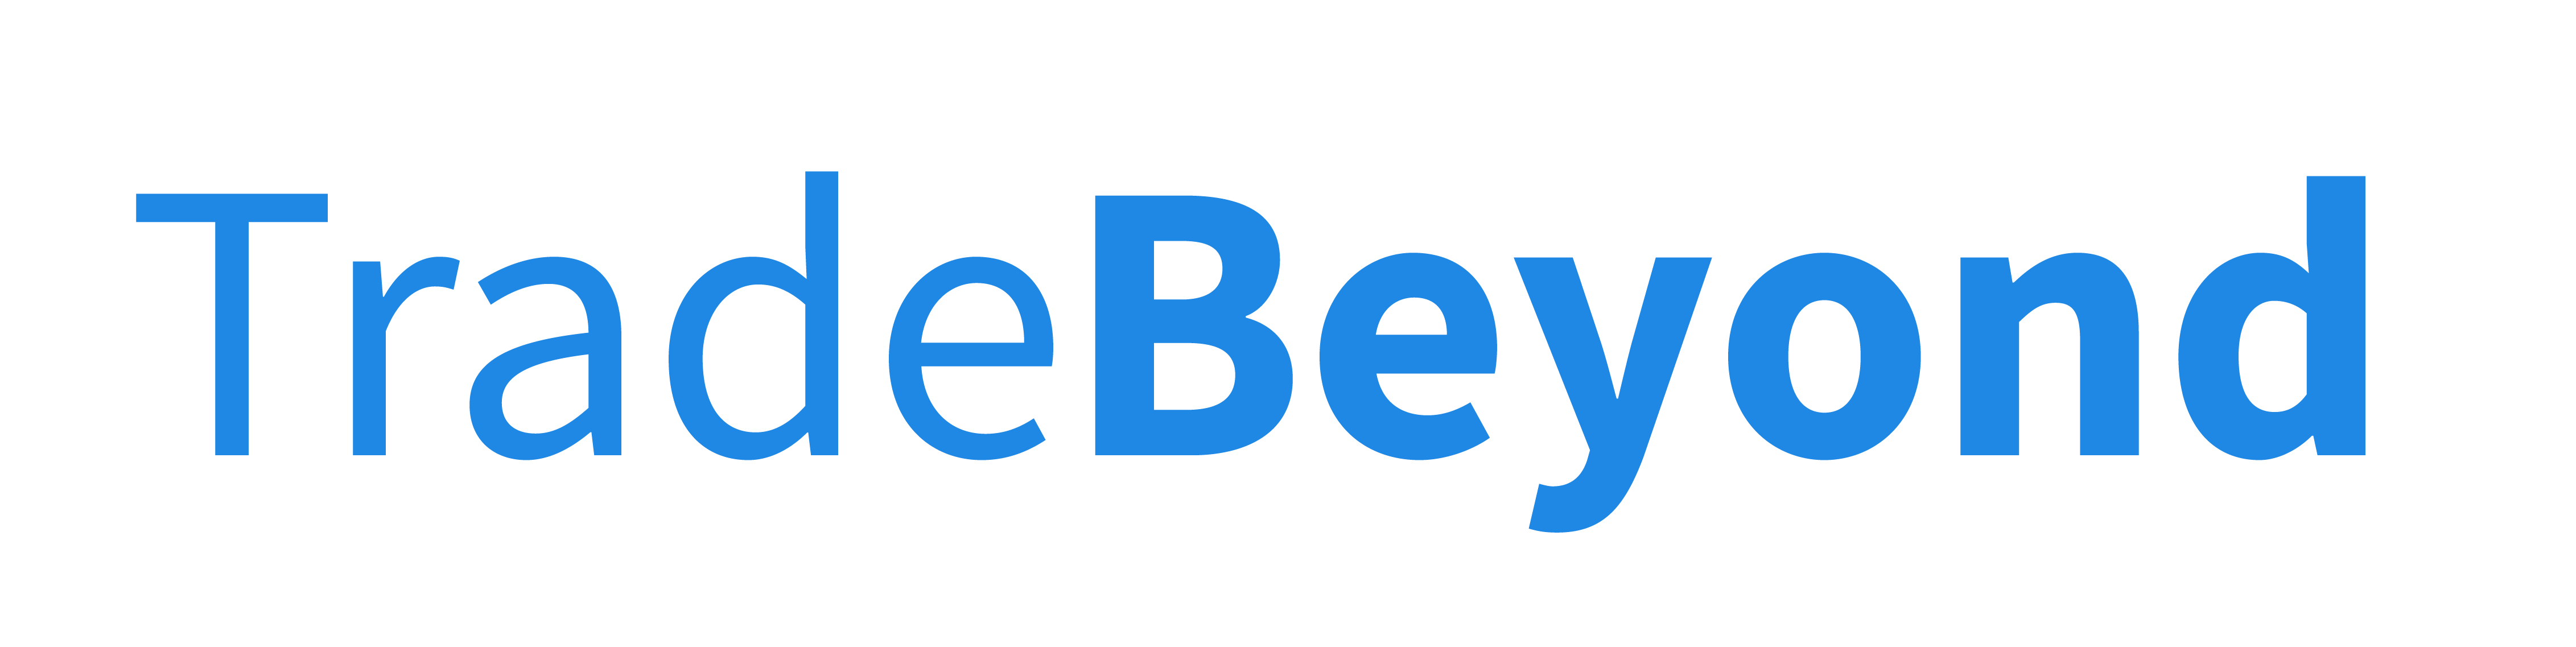 TradeBeyond-logo-blue-01.png